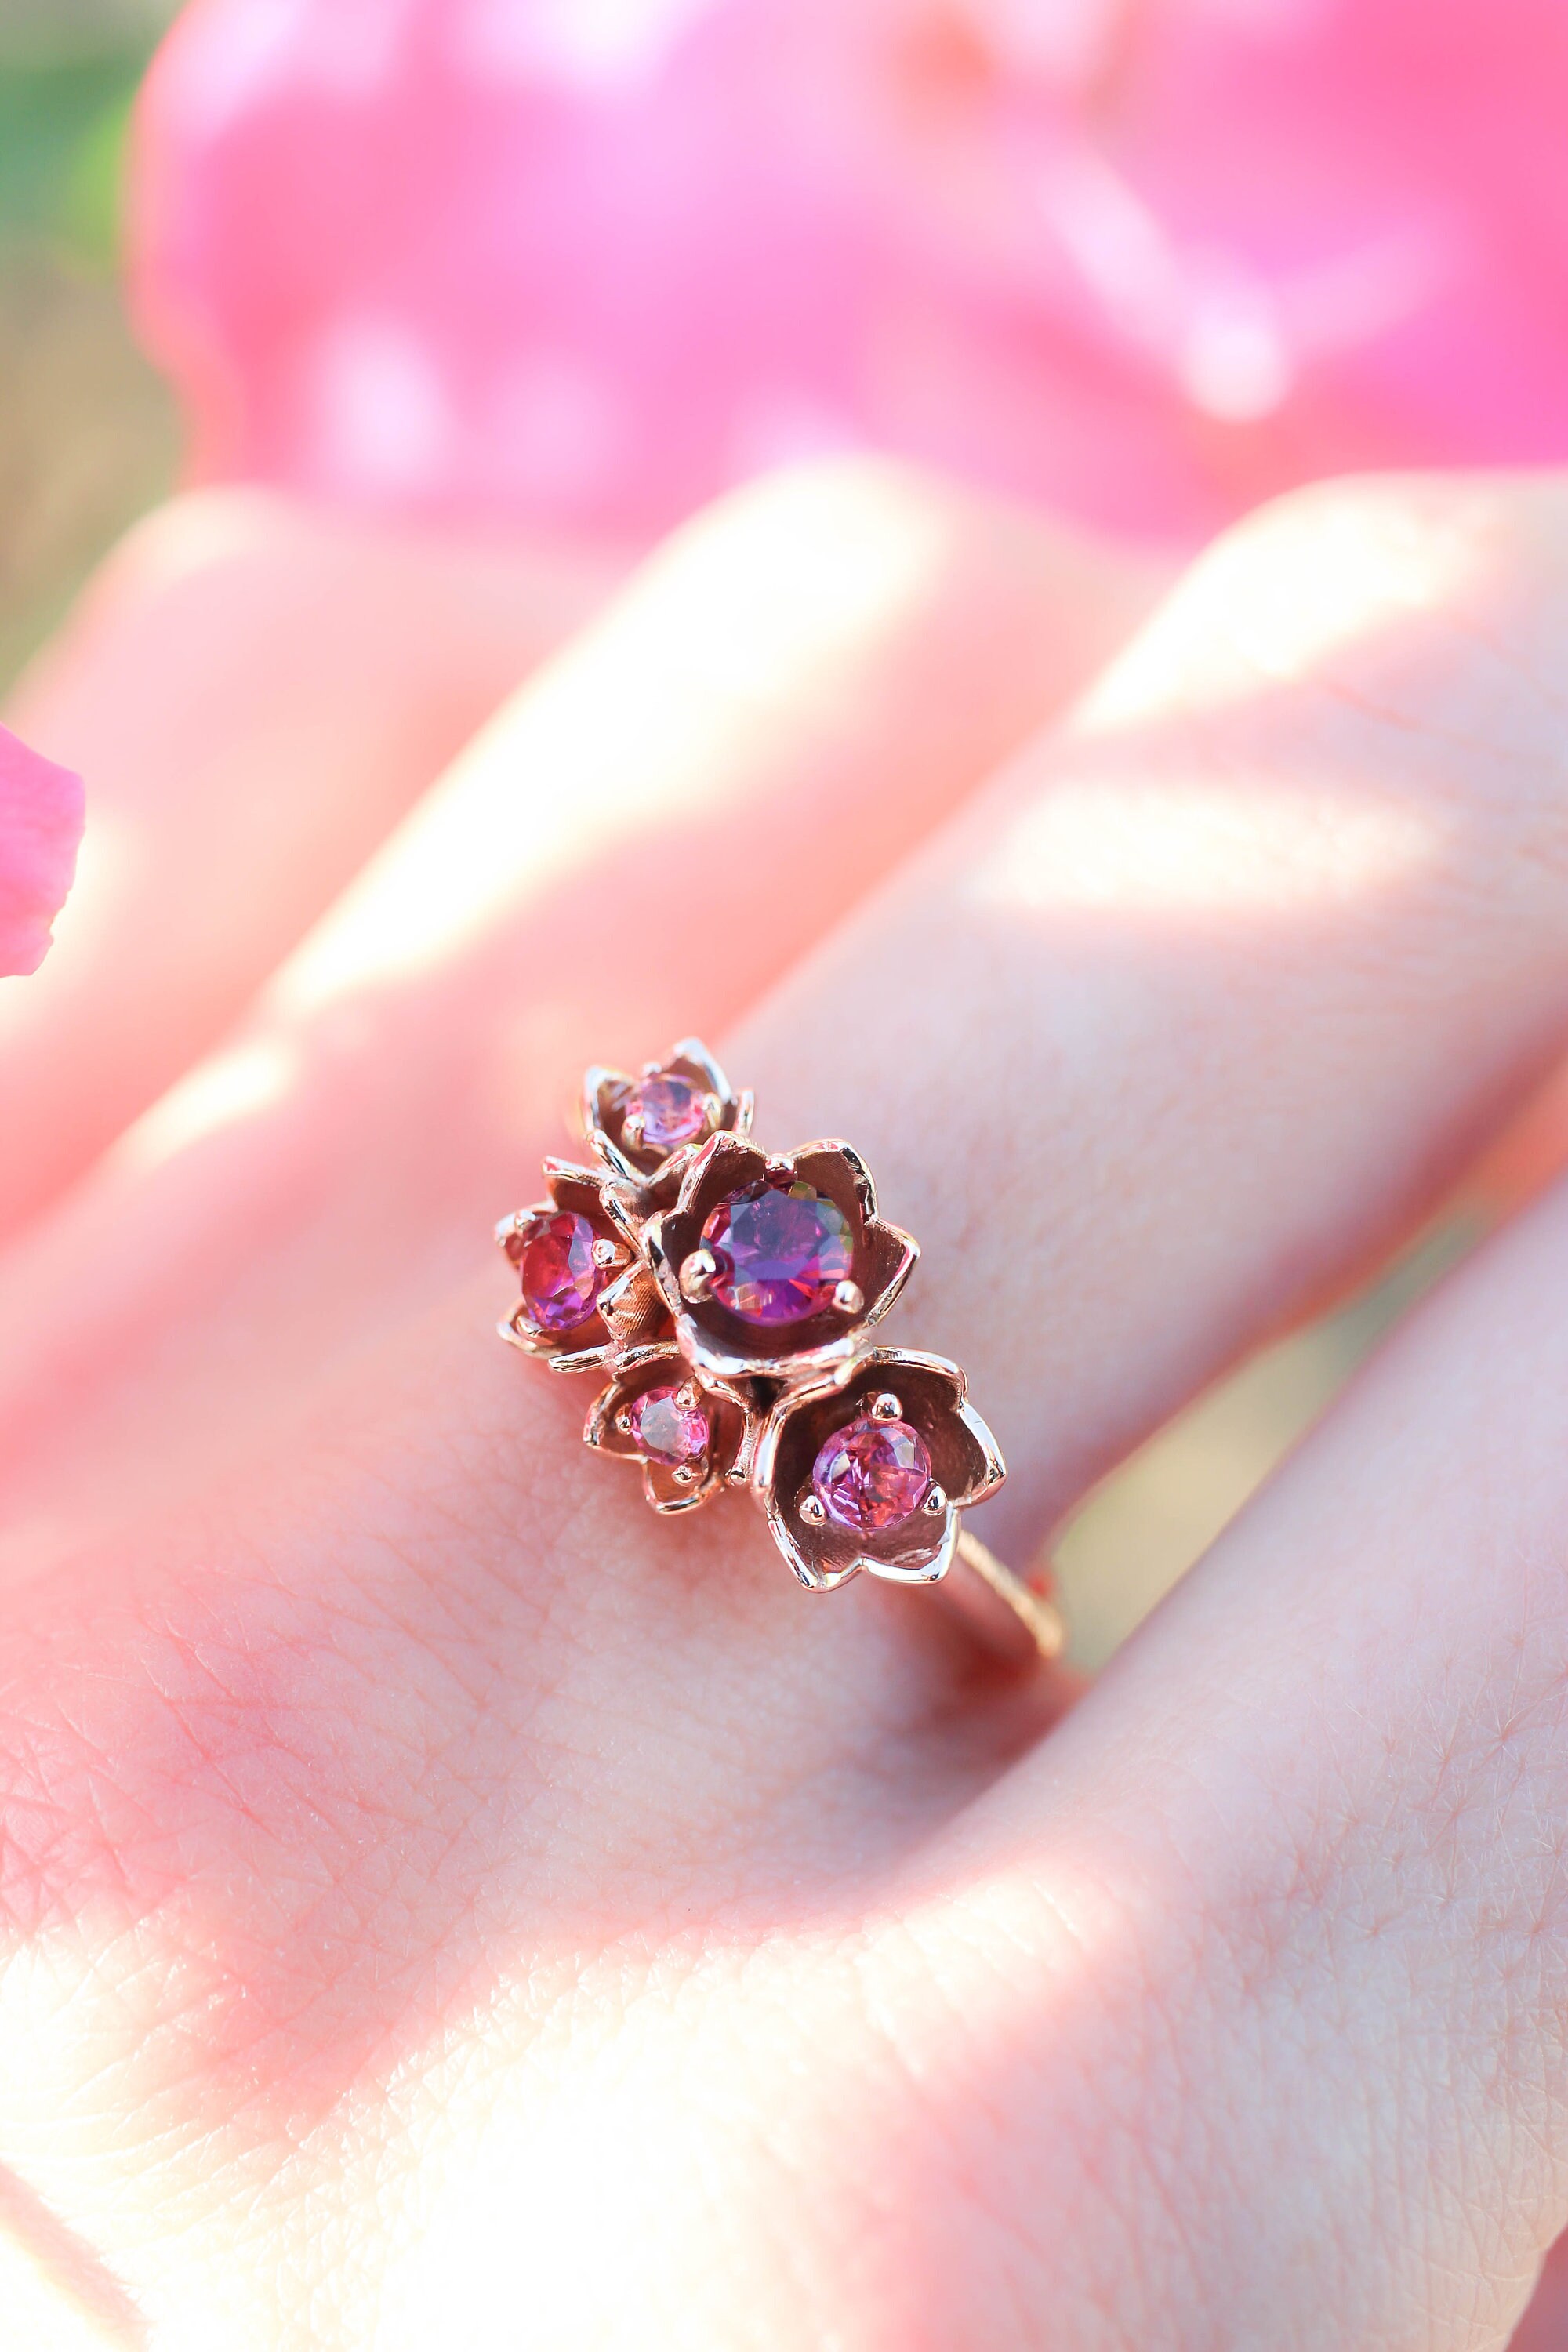 Flower engagement ring pink tourmaline ring rose gold ring | Etsy